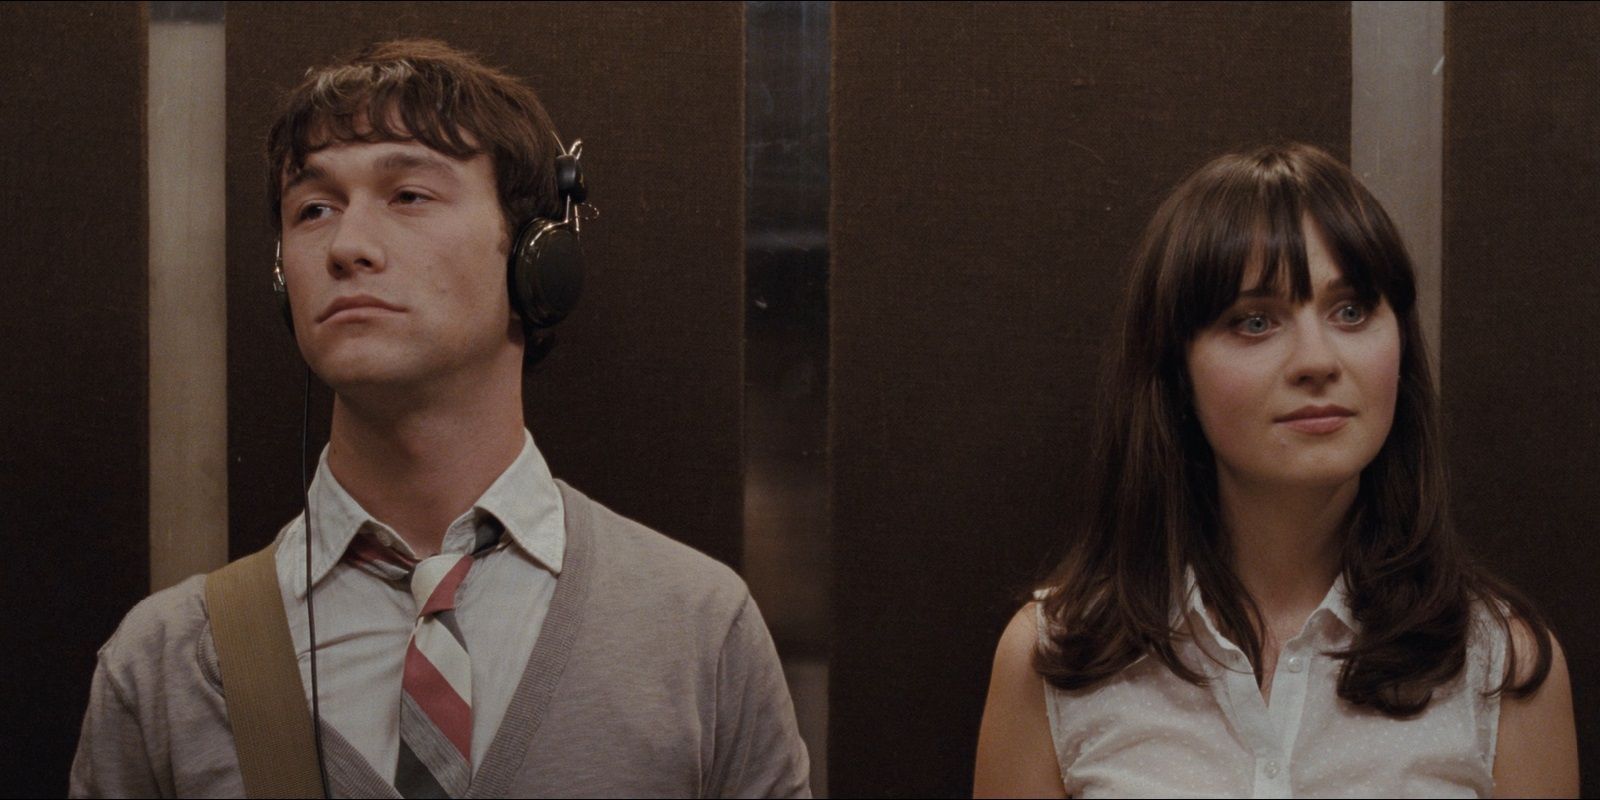 Tom (Joseph Gordon Levitt) and Summer (Zooey Deschanel) inside an elevator in 500 Days of Summer. 